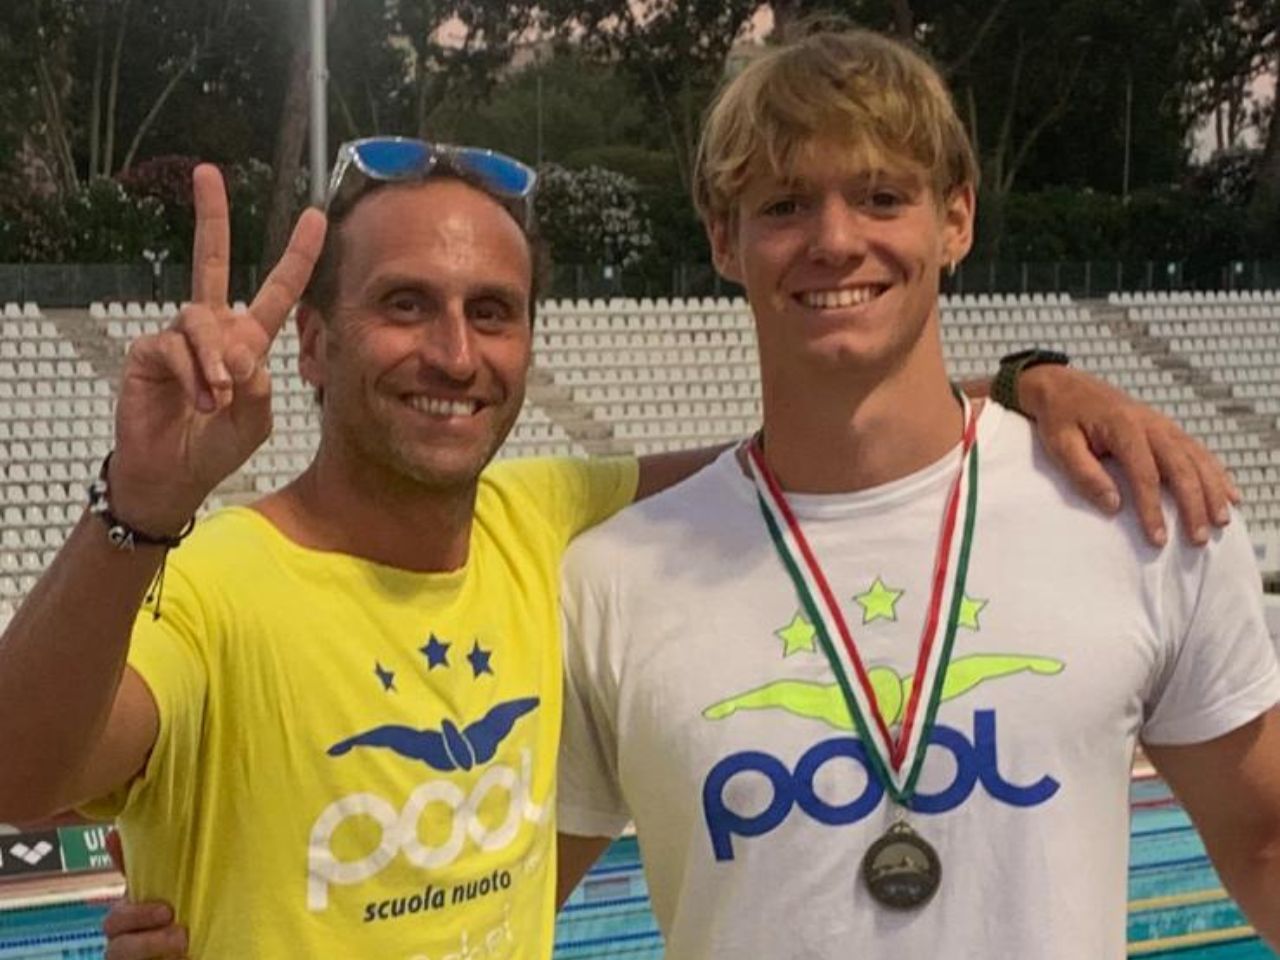 Pool Nuoto brilla ai campionati italiani, Pignotti bronzo nei 50